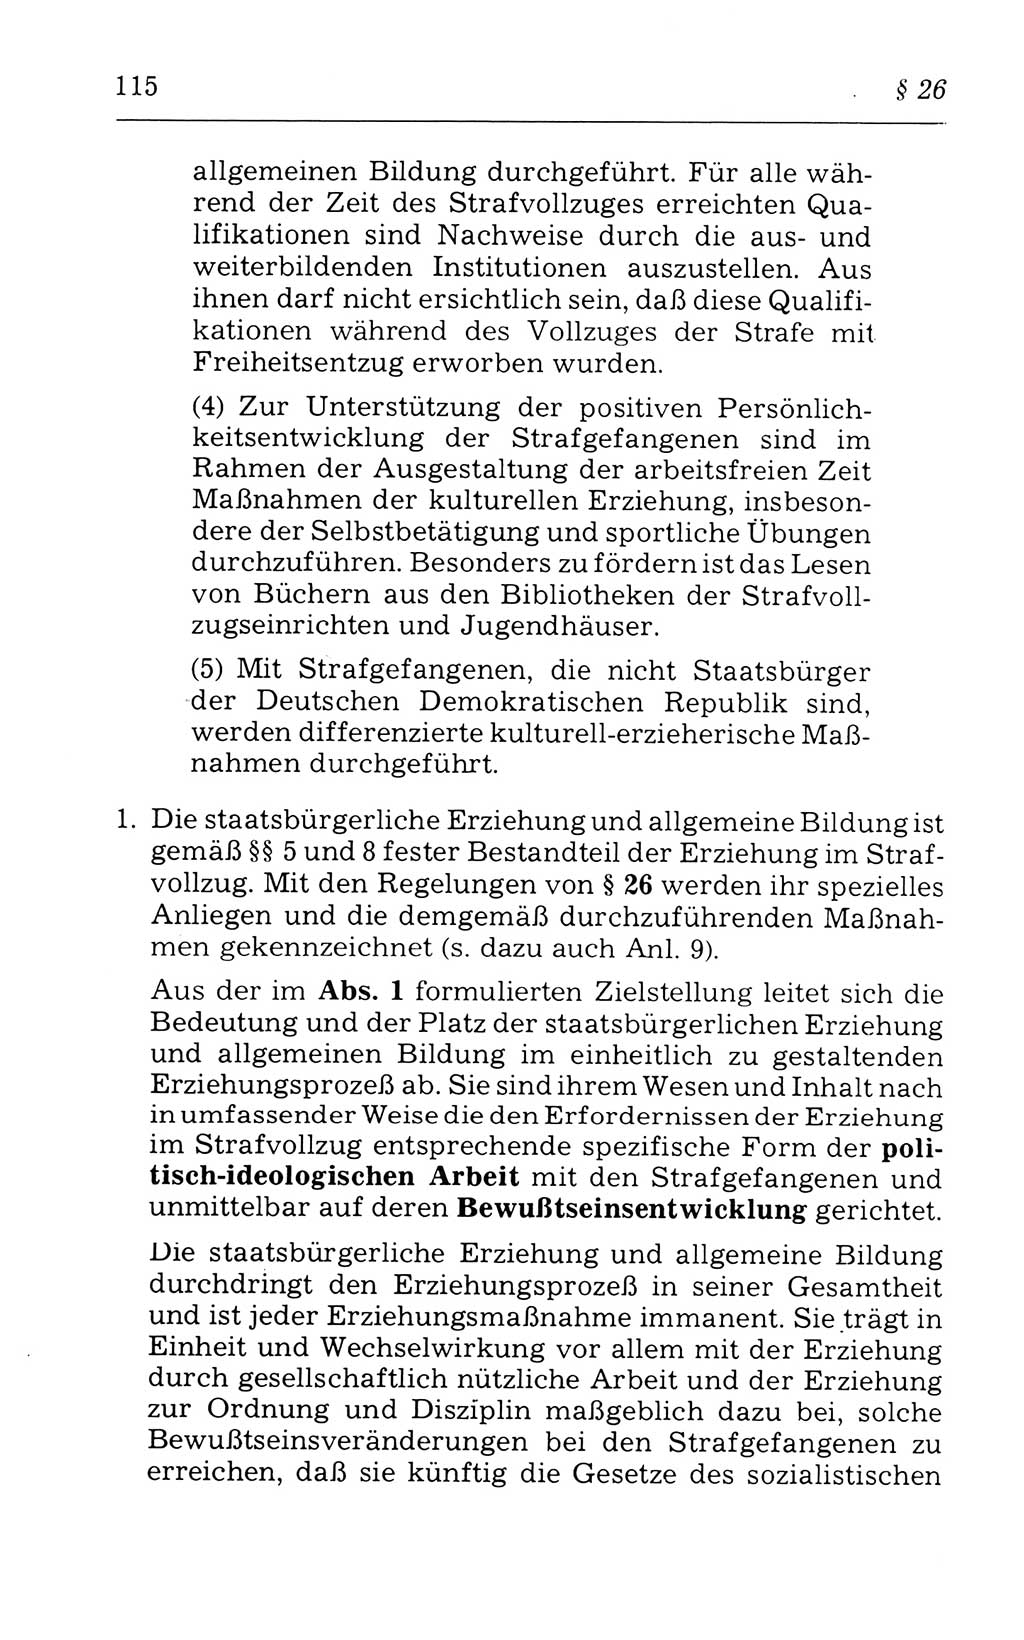 Kommentar zum Strafvollzugsgesetz [(StVG) Deutsche Demokratische Republik (DDR)] 1980, Seite 115 (Komm. StVG DDR 1980, S. 115)